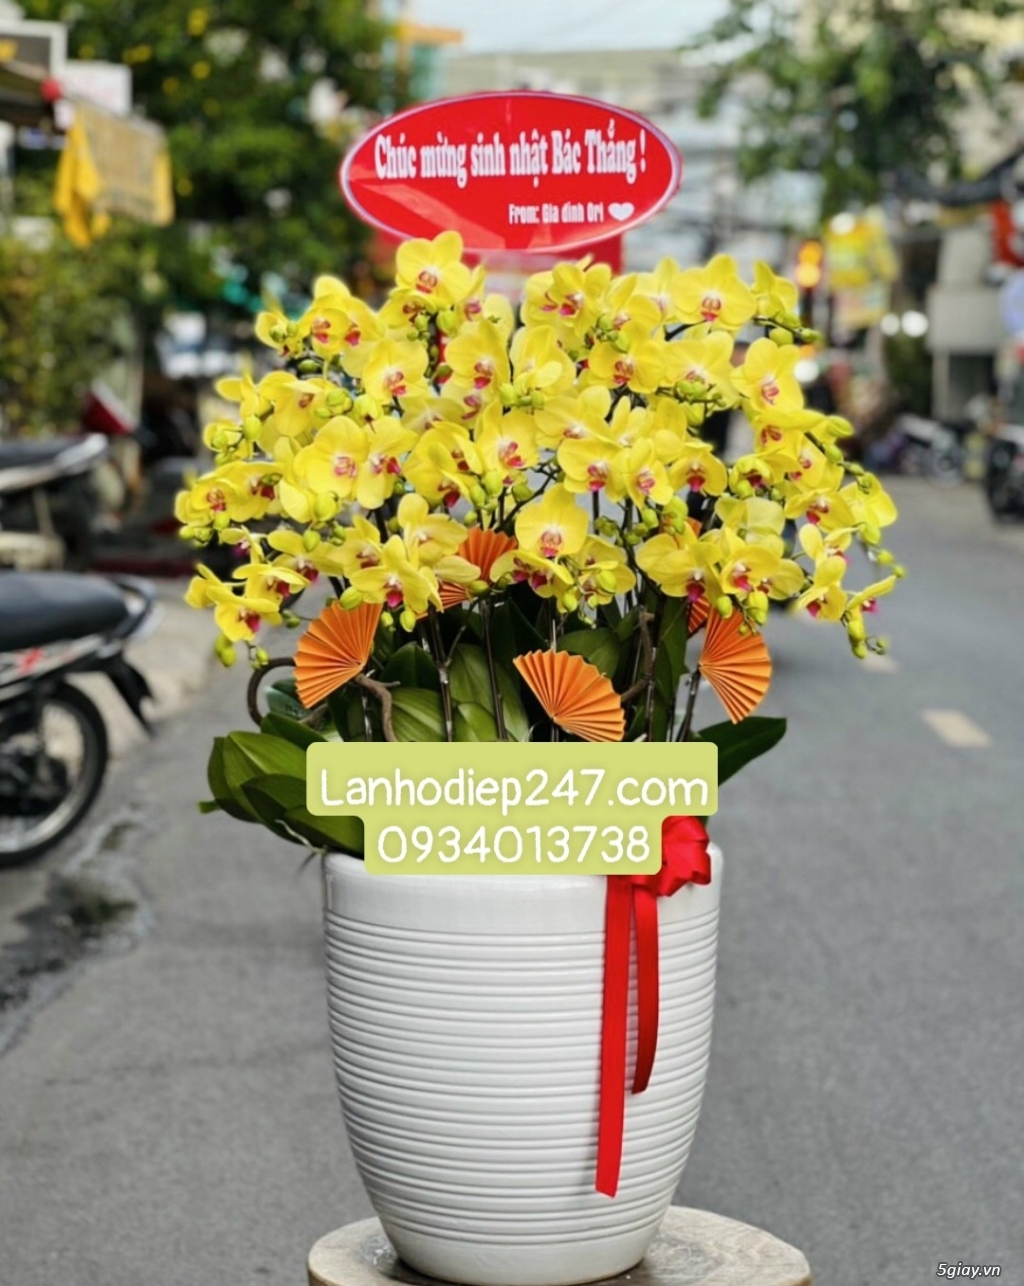 Shop hoa tươi Lan Hồ Điệp 247 tại Bà Rịa Vũng Tàu 0934013738 - 14